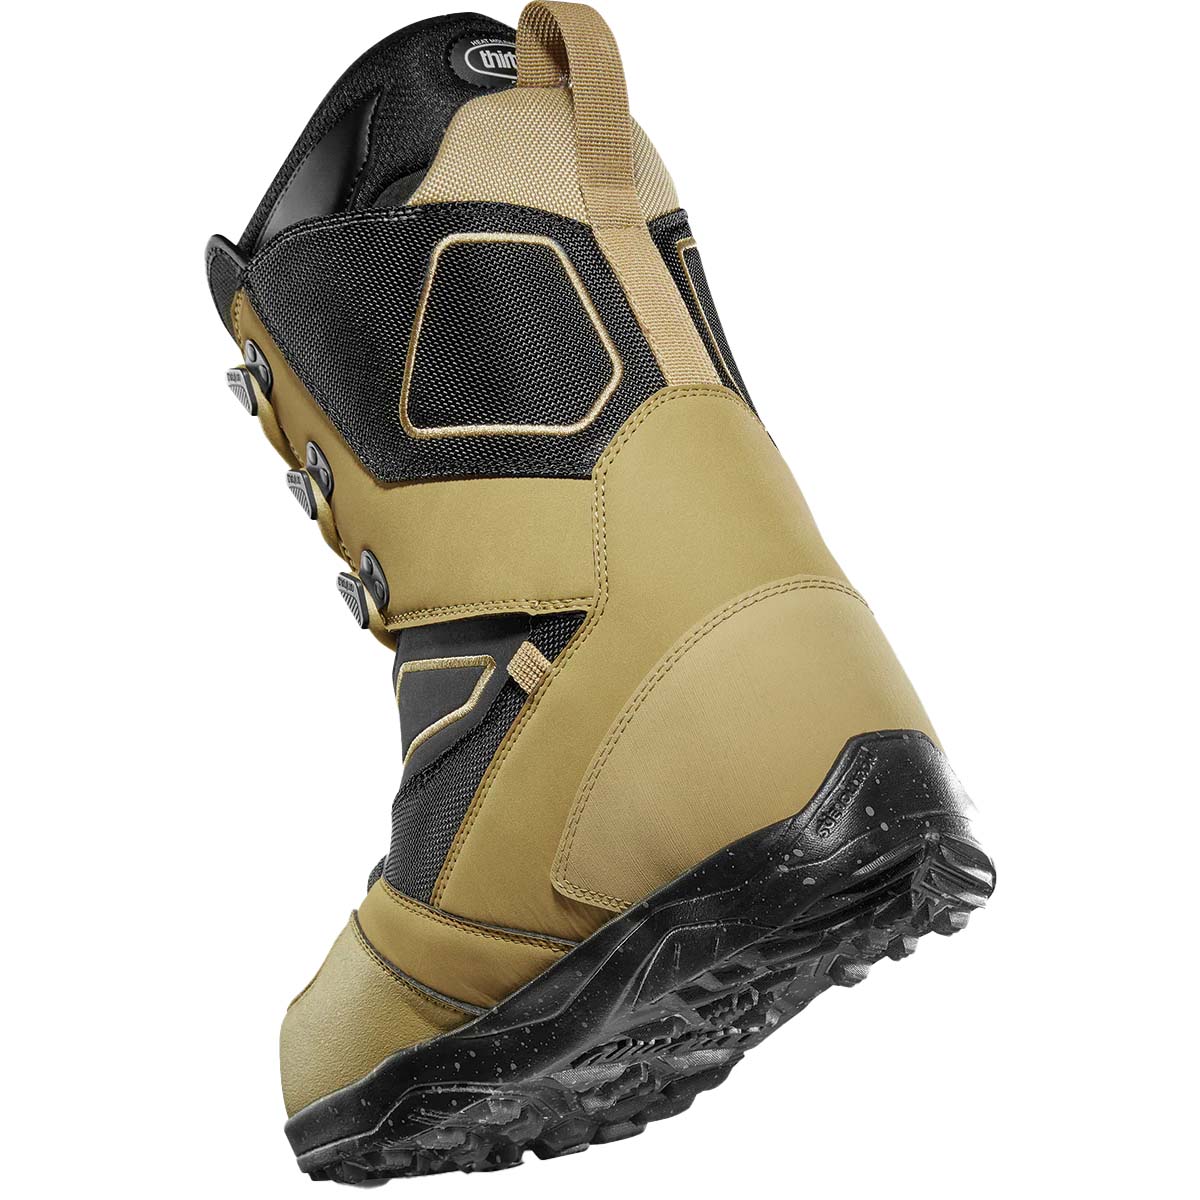 thirtytwo JP Walker Light Snowboard Boots